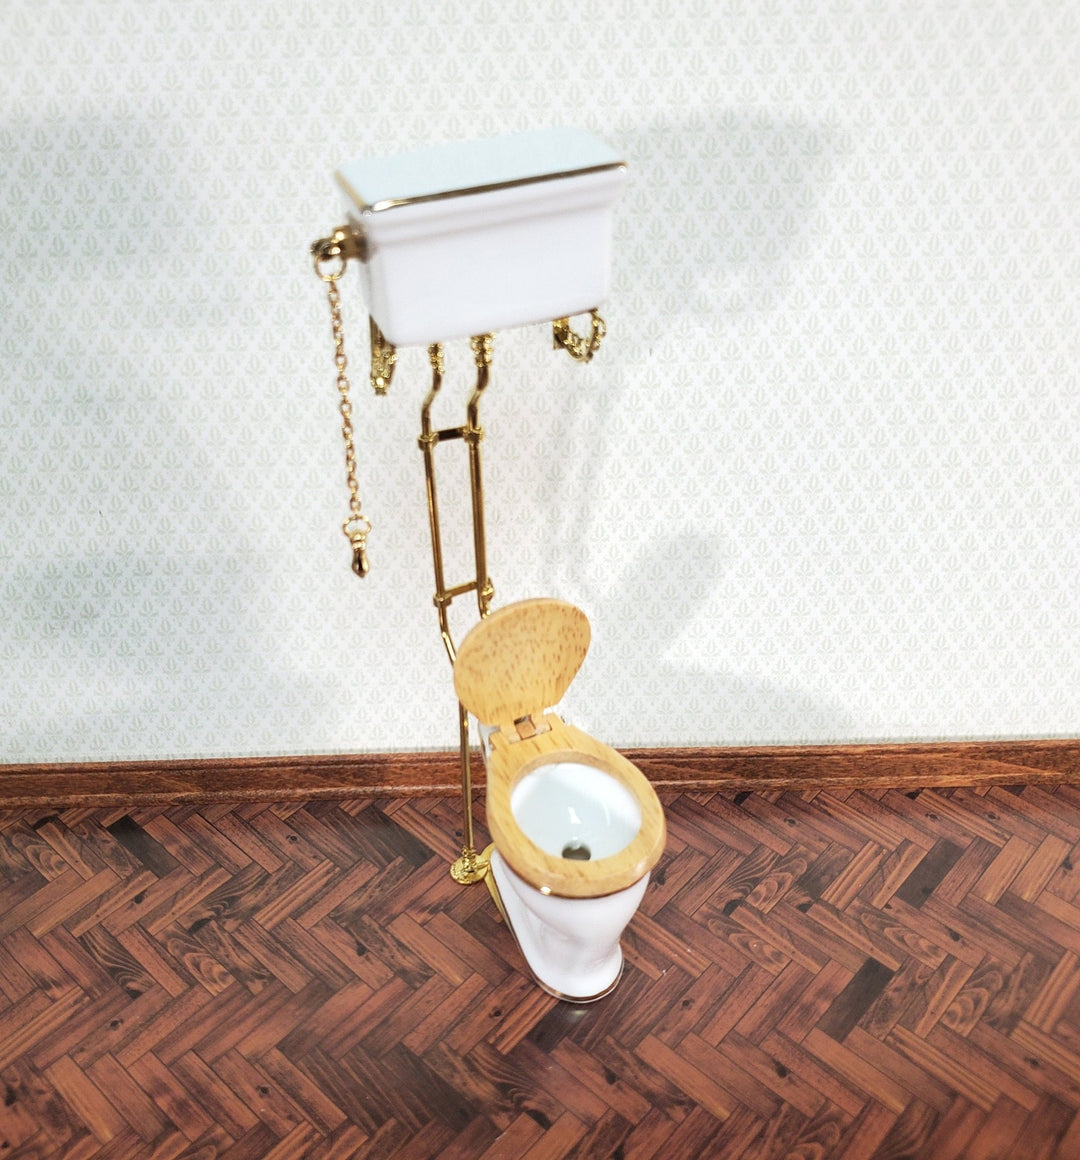 Reutter's Dollhouse Toilet High Tank Vintage Style Porcelain 1:12 Scale Bathroom Miniature - Miniature Crush